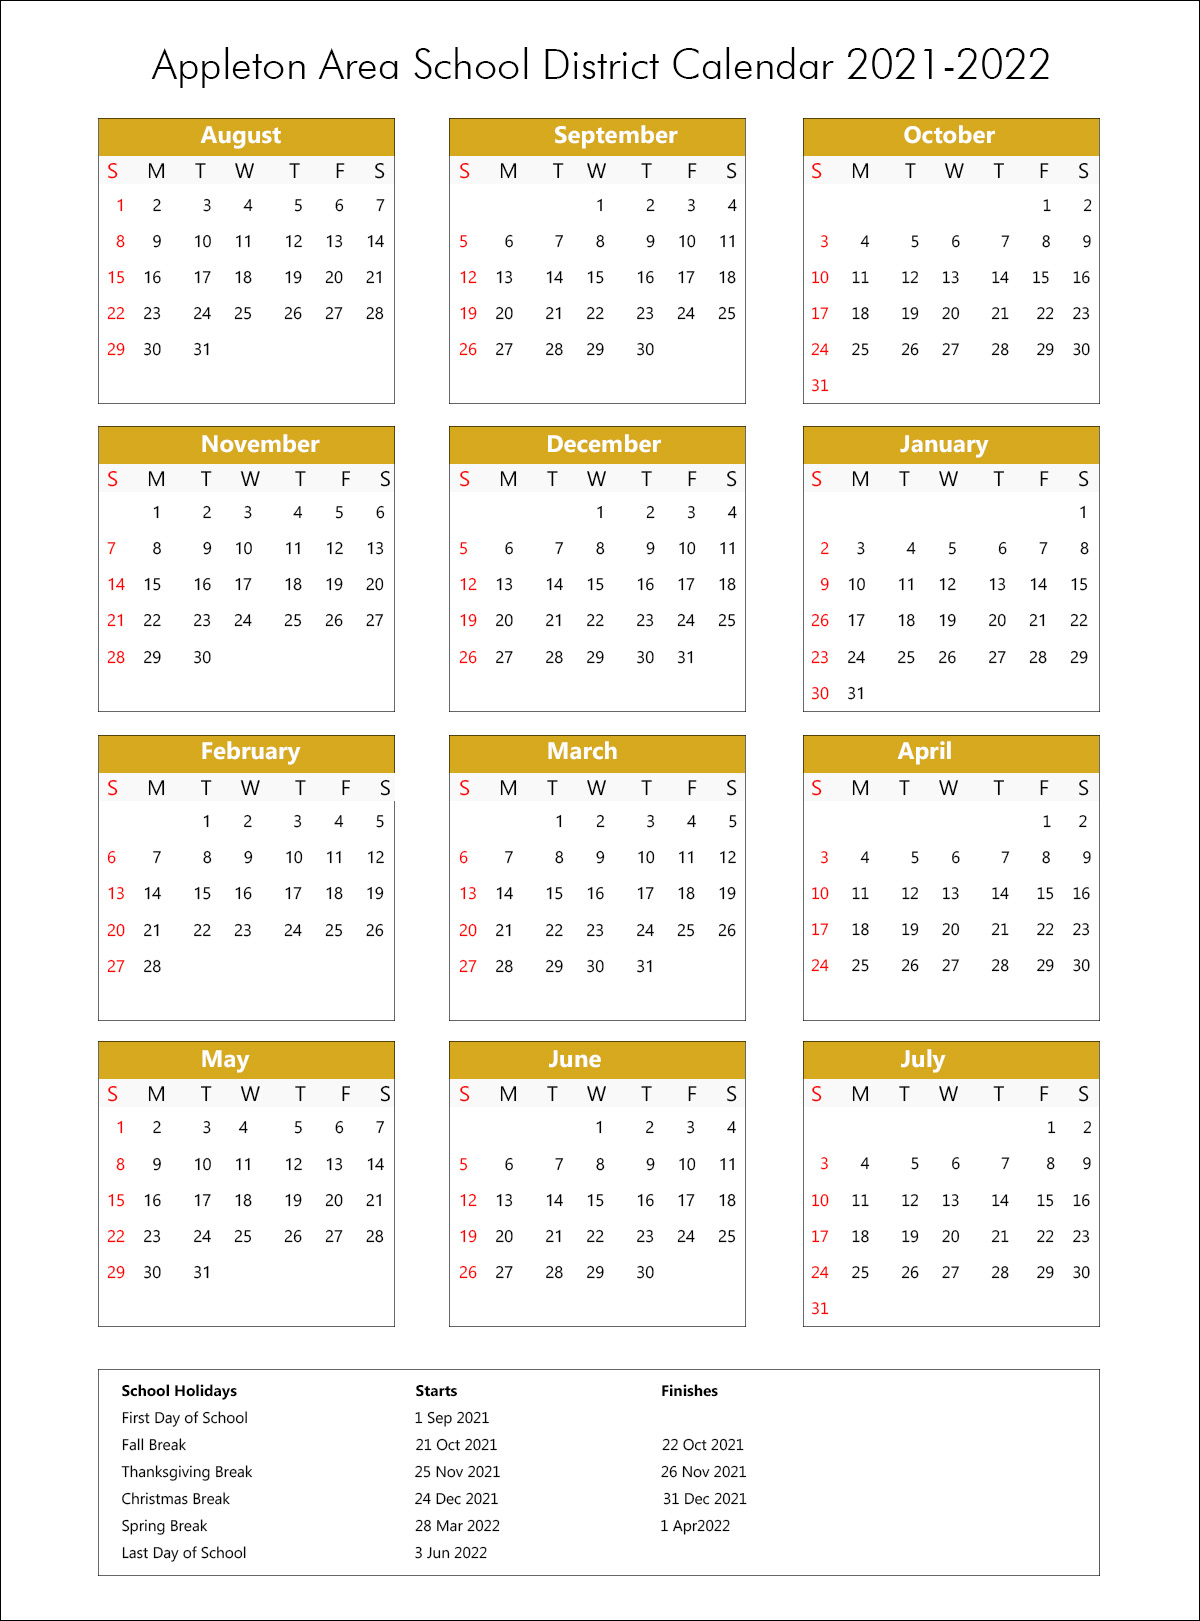 Appleton Area School District Calendar 2021